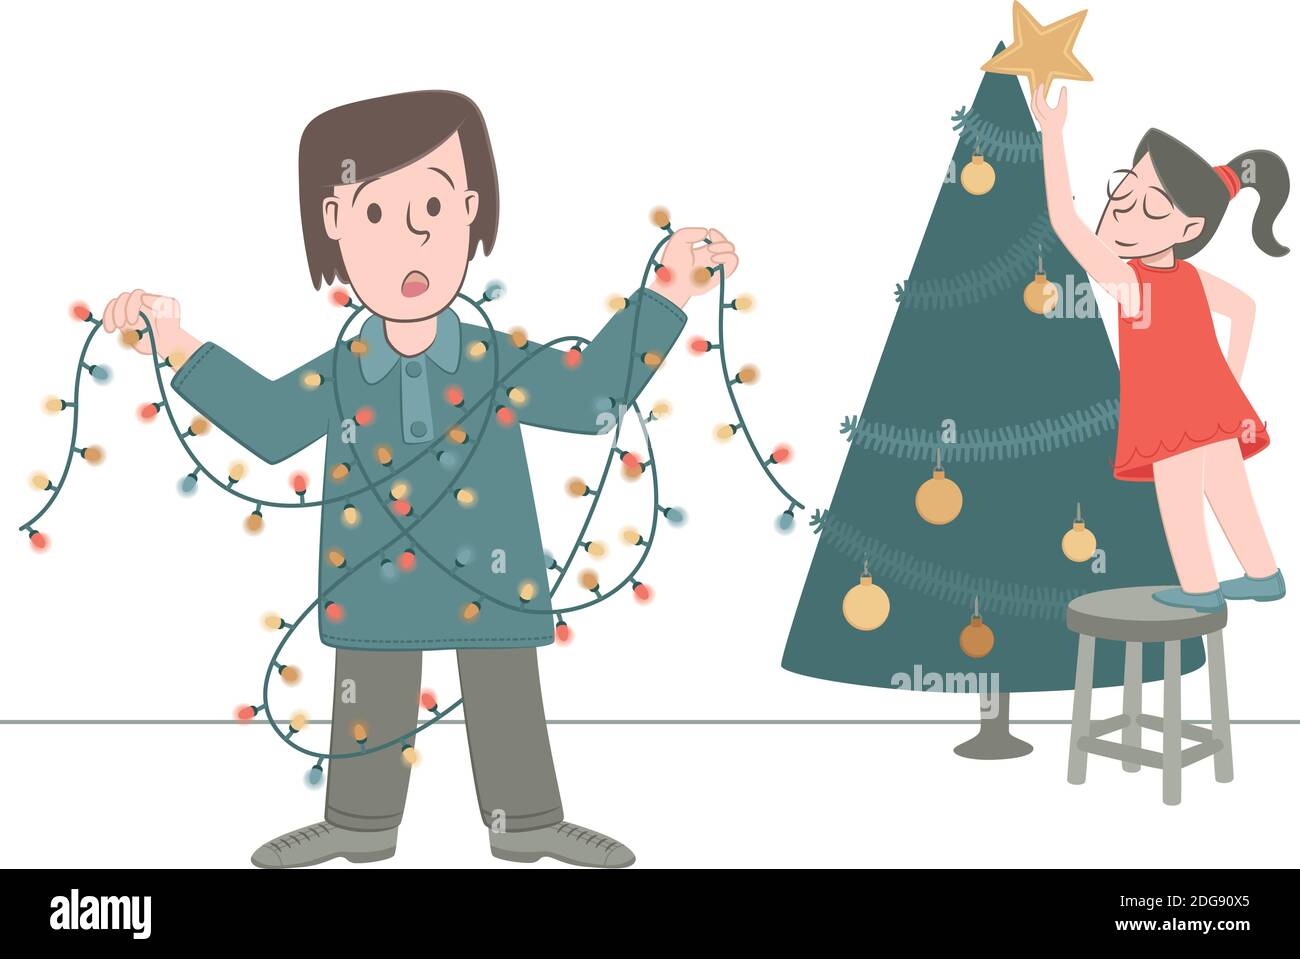 Ilustración de estilo retro de un niño que se enredó en las luces de Navidad, cuando estaba decorando el árbol de Navidad con su hermana Ilustración del Vector